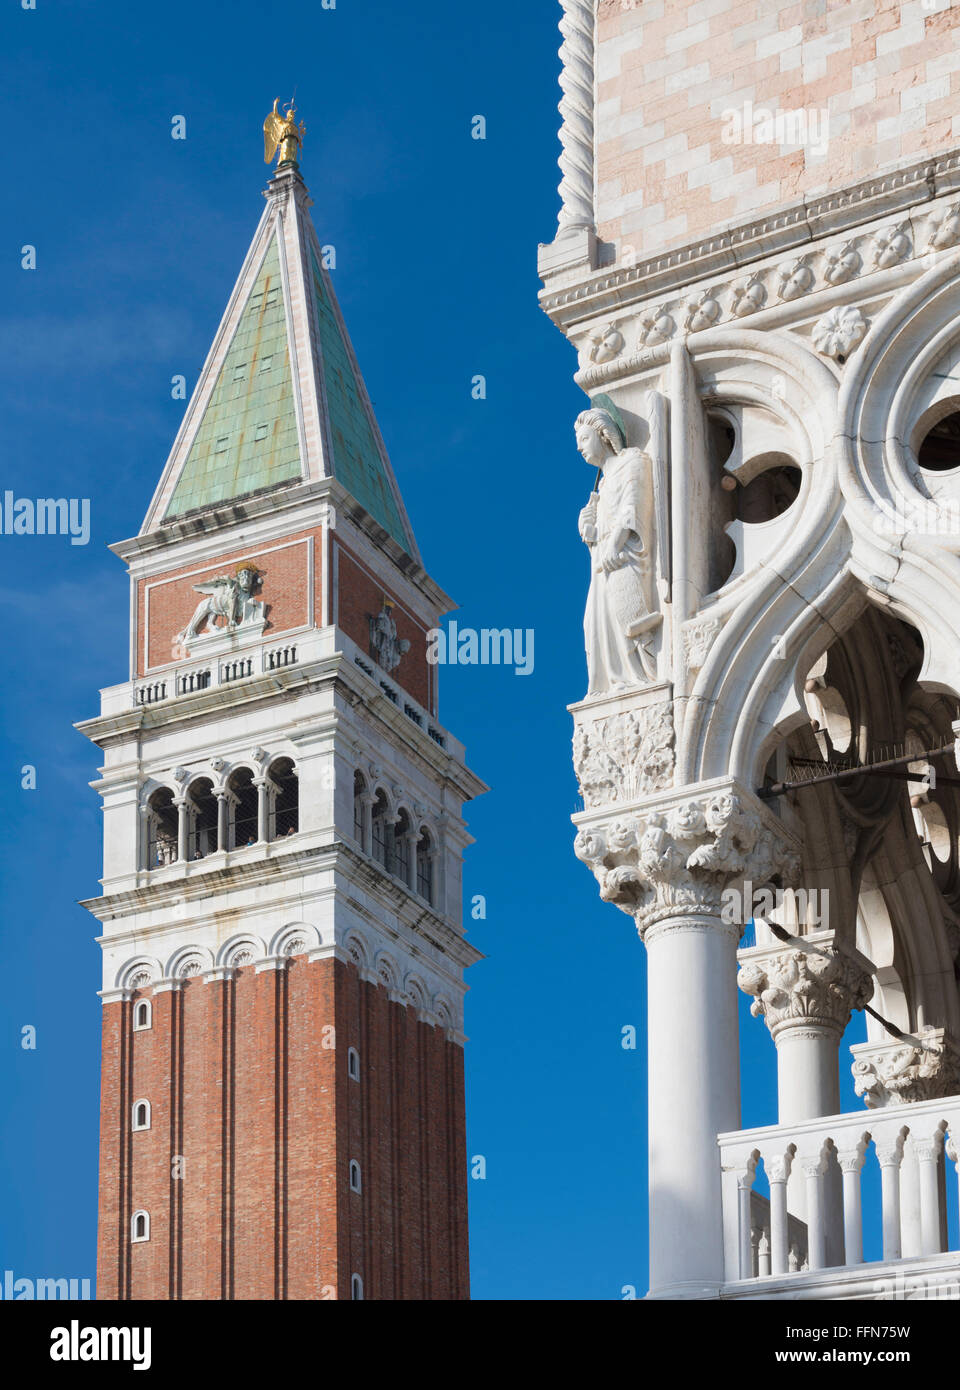 El Campanile de San Marcos torre campanario de la Iglesia de San Marcos, con el Palazzo Ducale o Palacio Ducal de Venecia, Italia Foto de stock